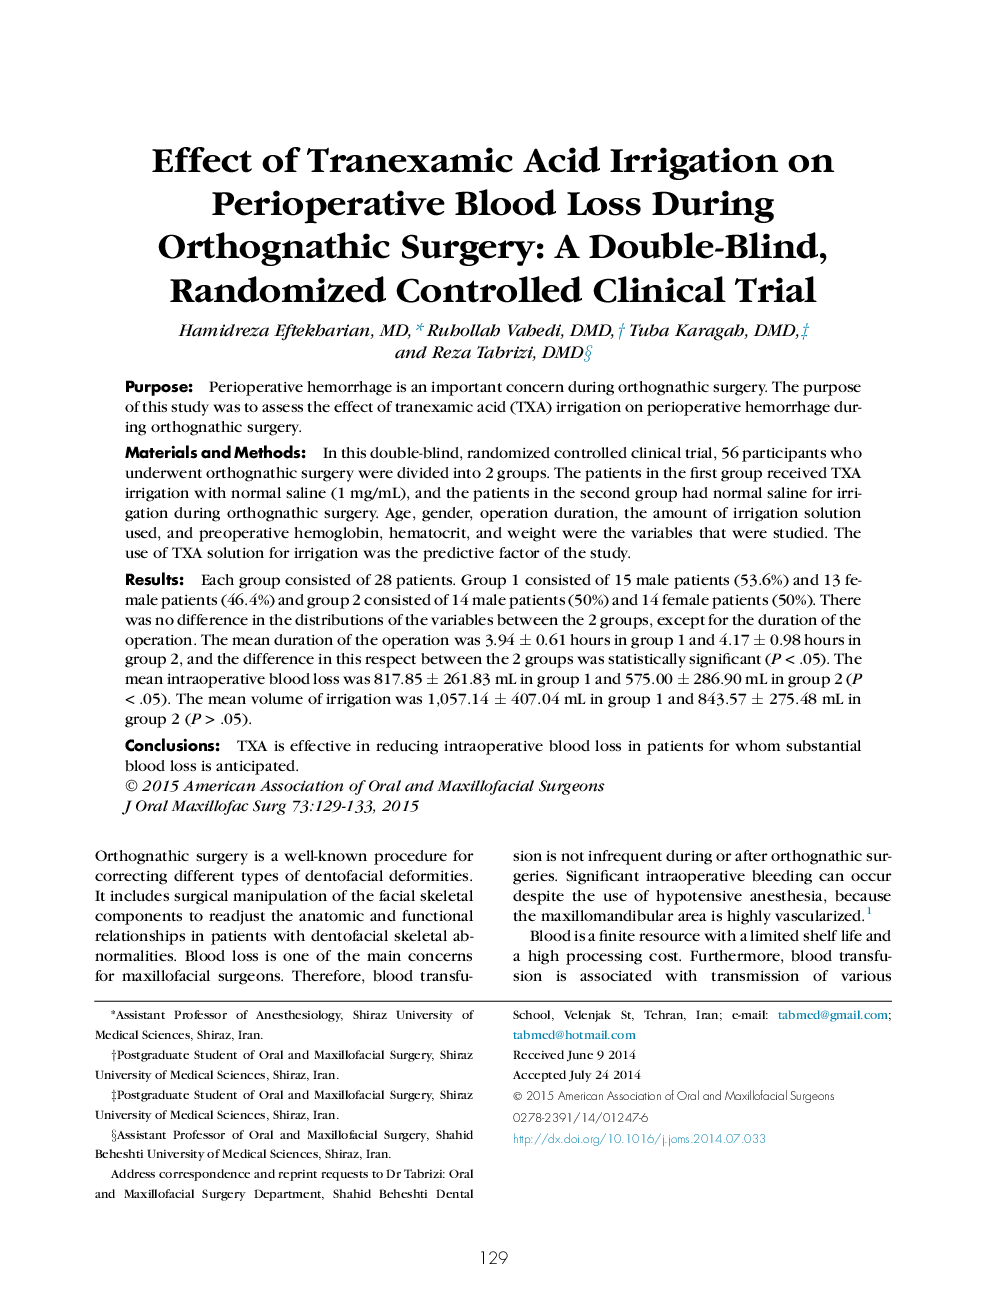 اثر آبیاری ترومارکسامیک اسید بر میزان خونریزی پس از عمل جراحی ارتونماتیک: یک آزمایش بالینی تصادفی شده با دو تایی 